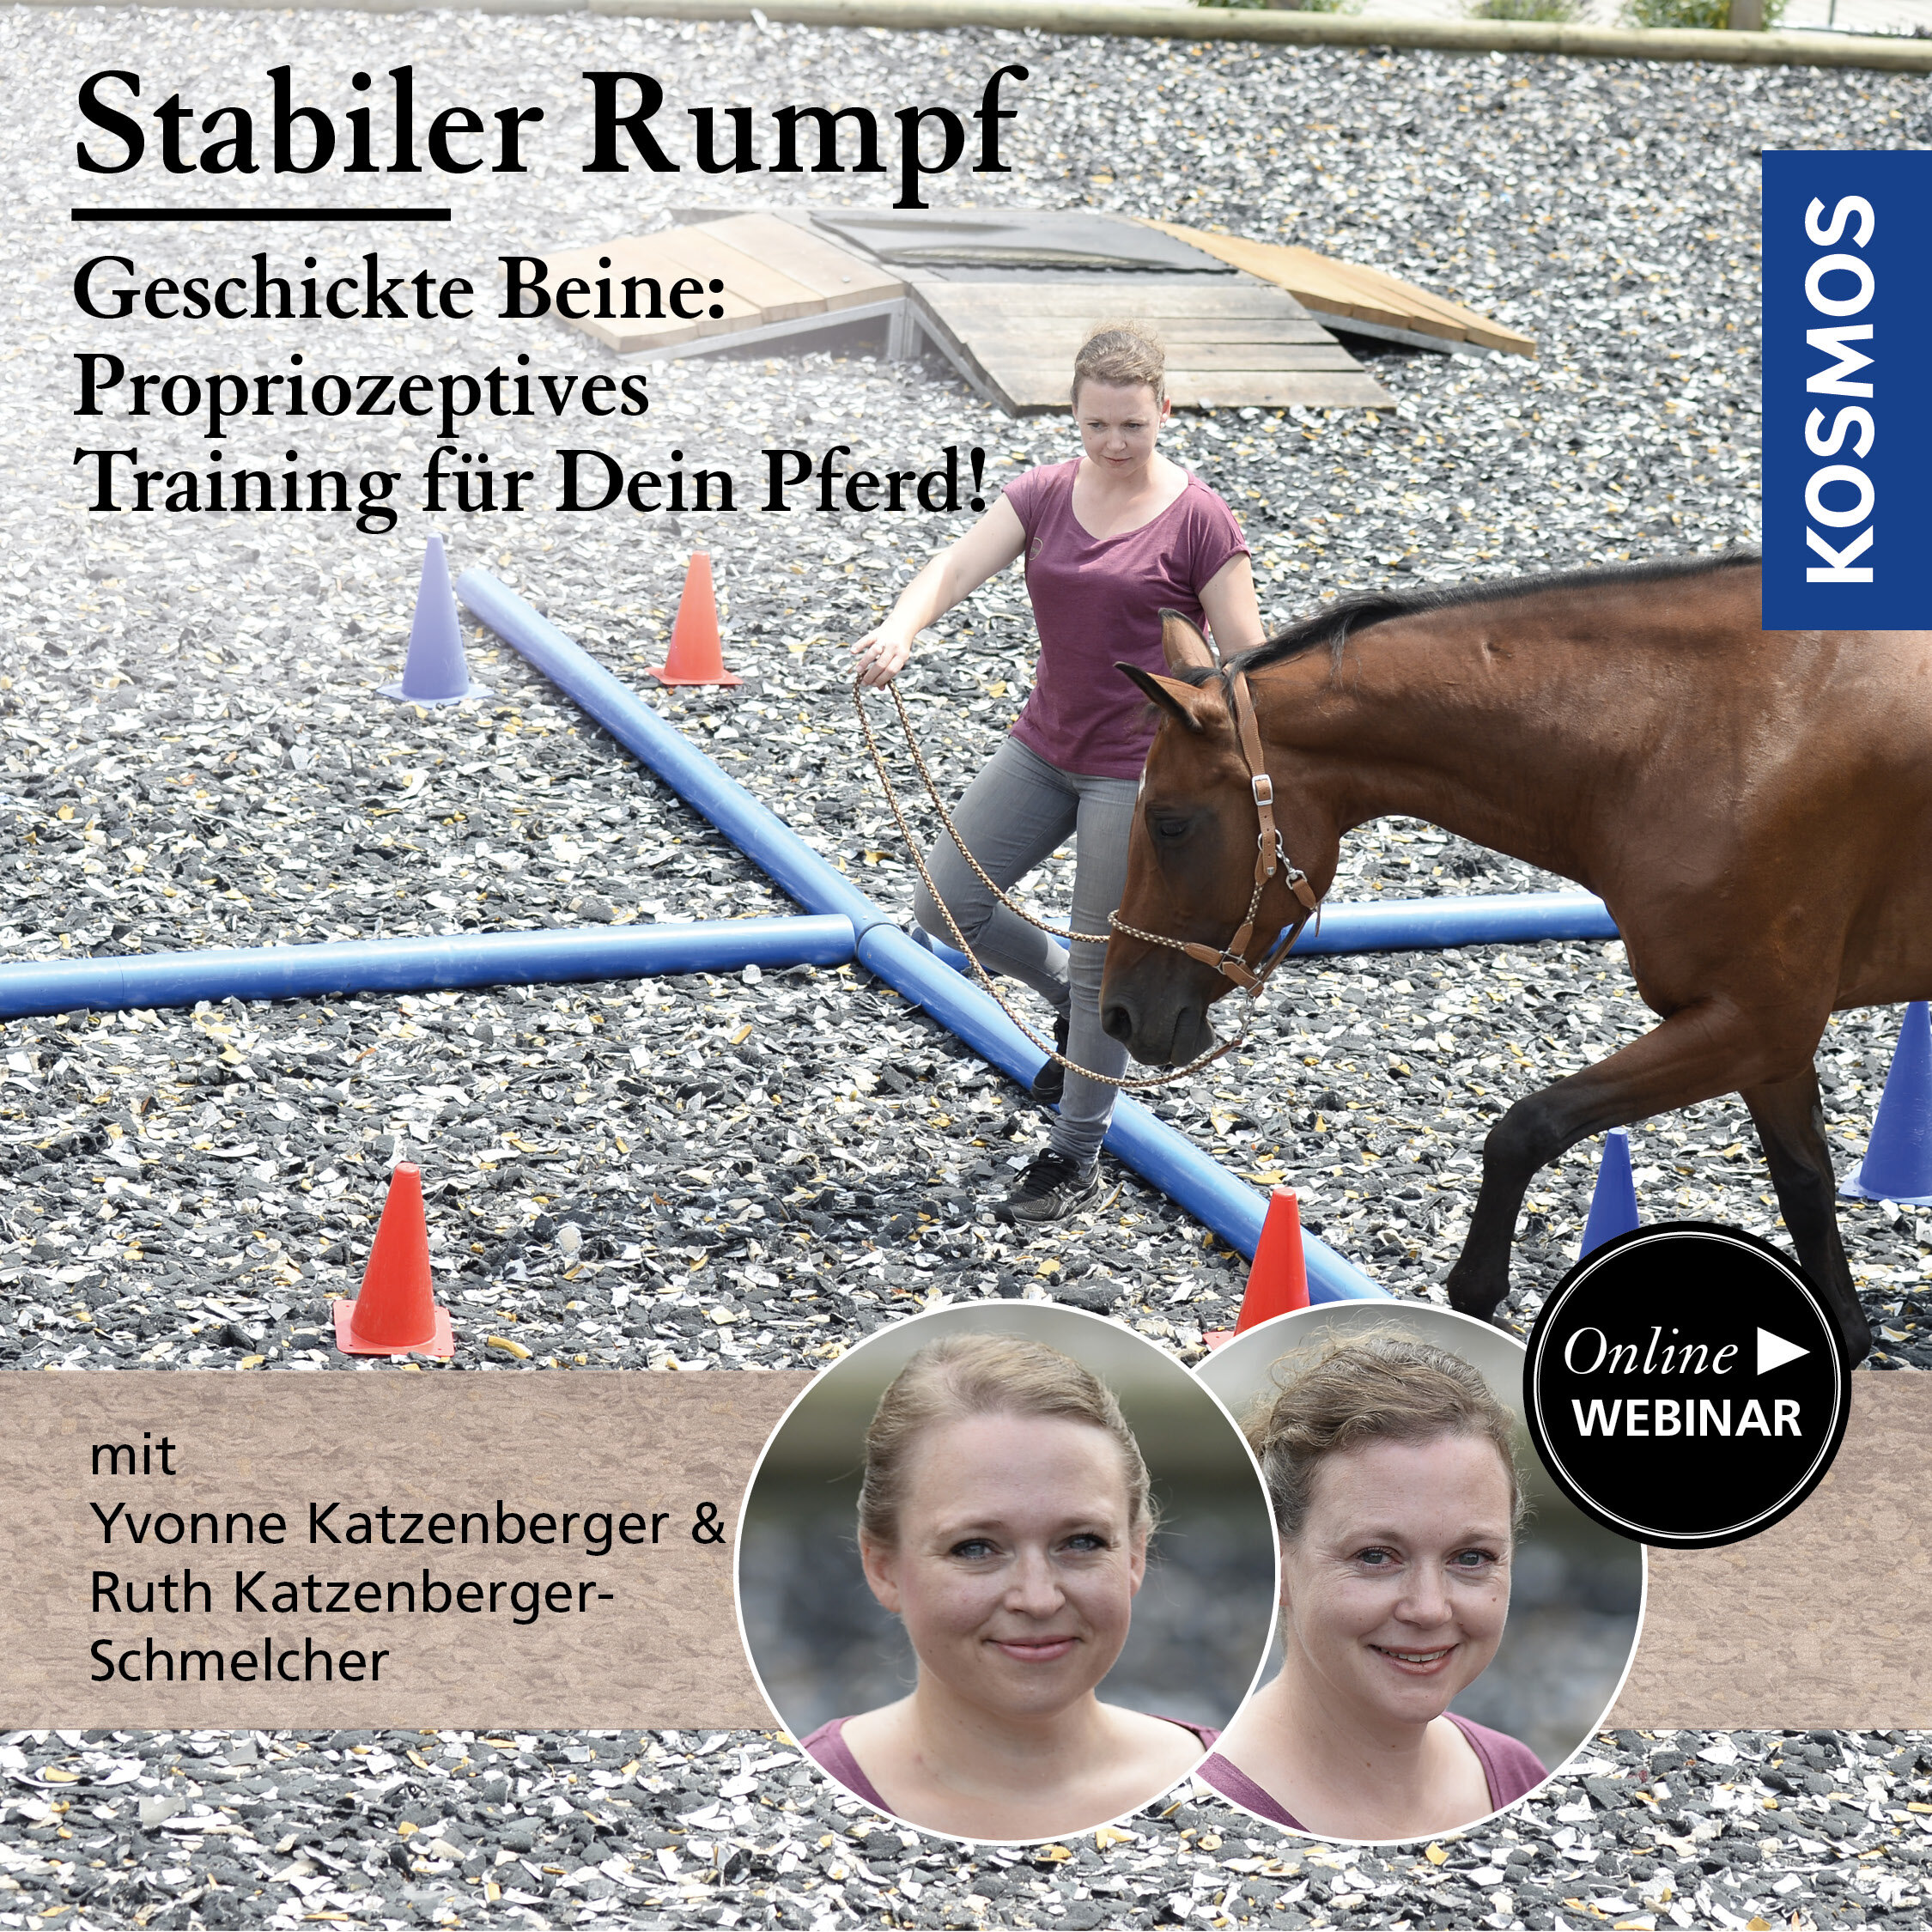 Stabiler Rumpf – geschickte Beine: Propriozeptives Training für mein Pferd!